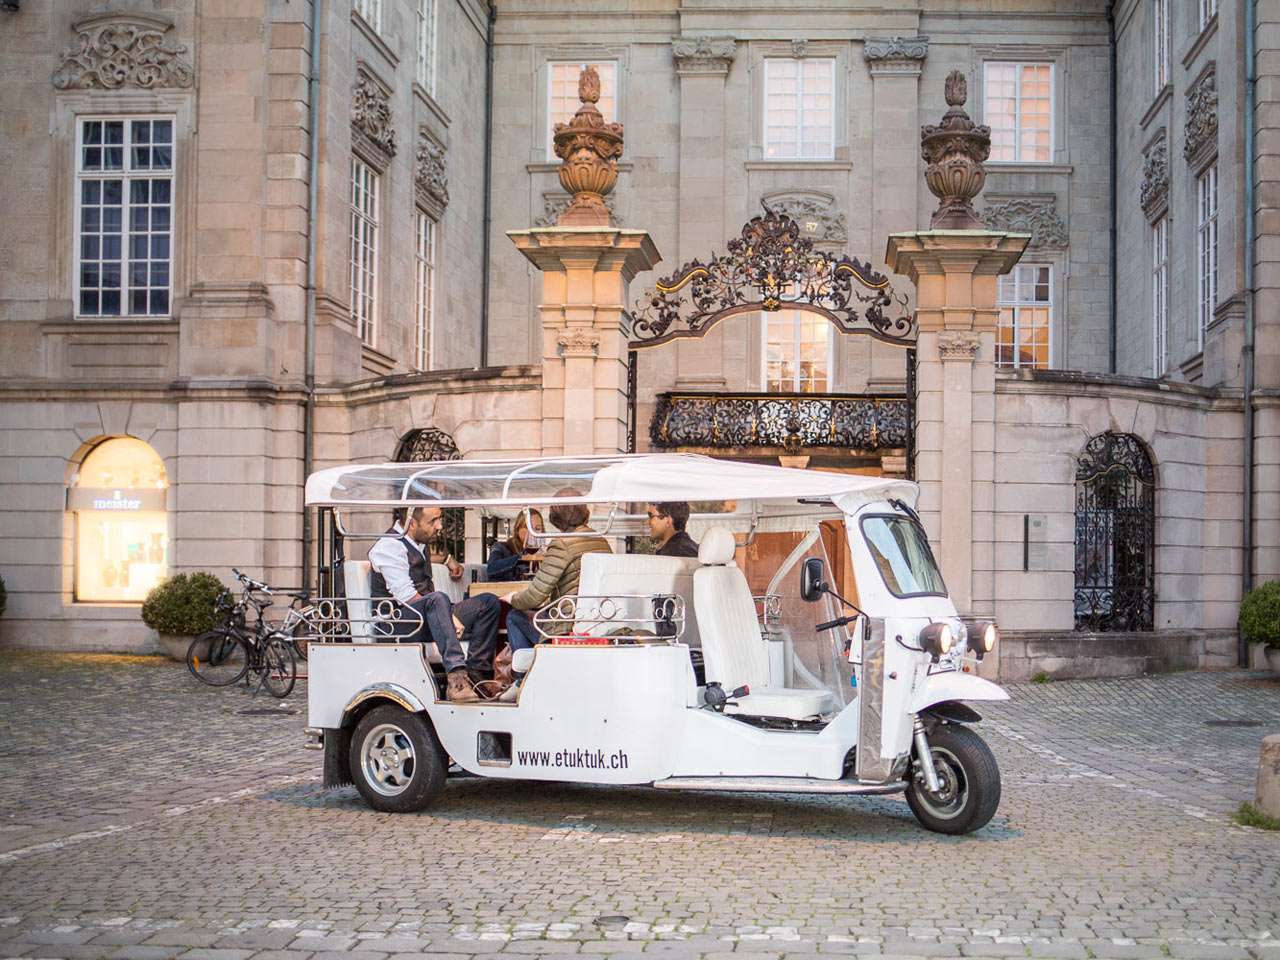 Tuktuk Zurich puzzle online from photo